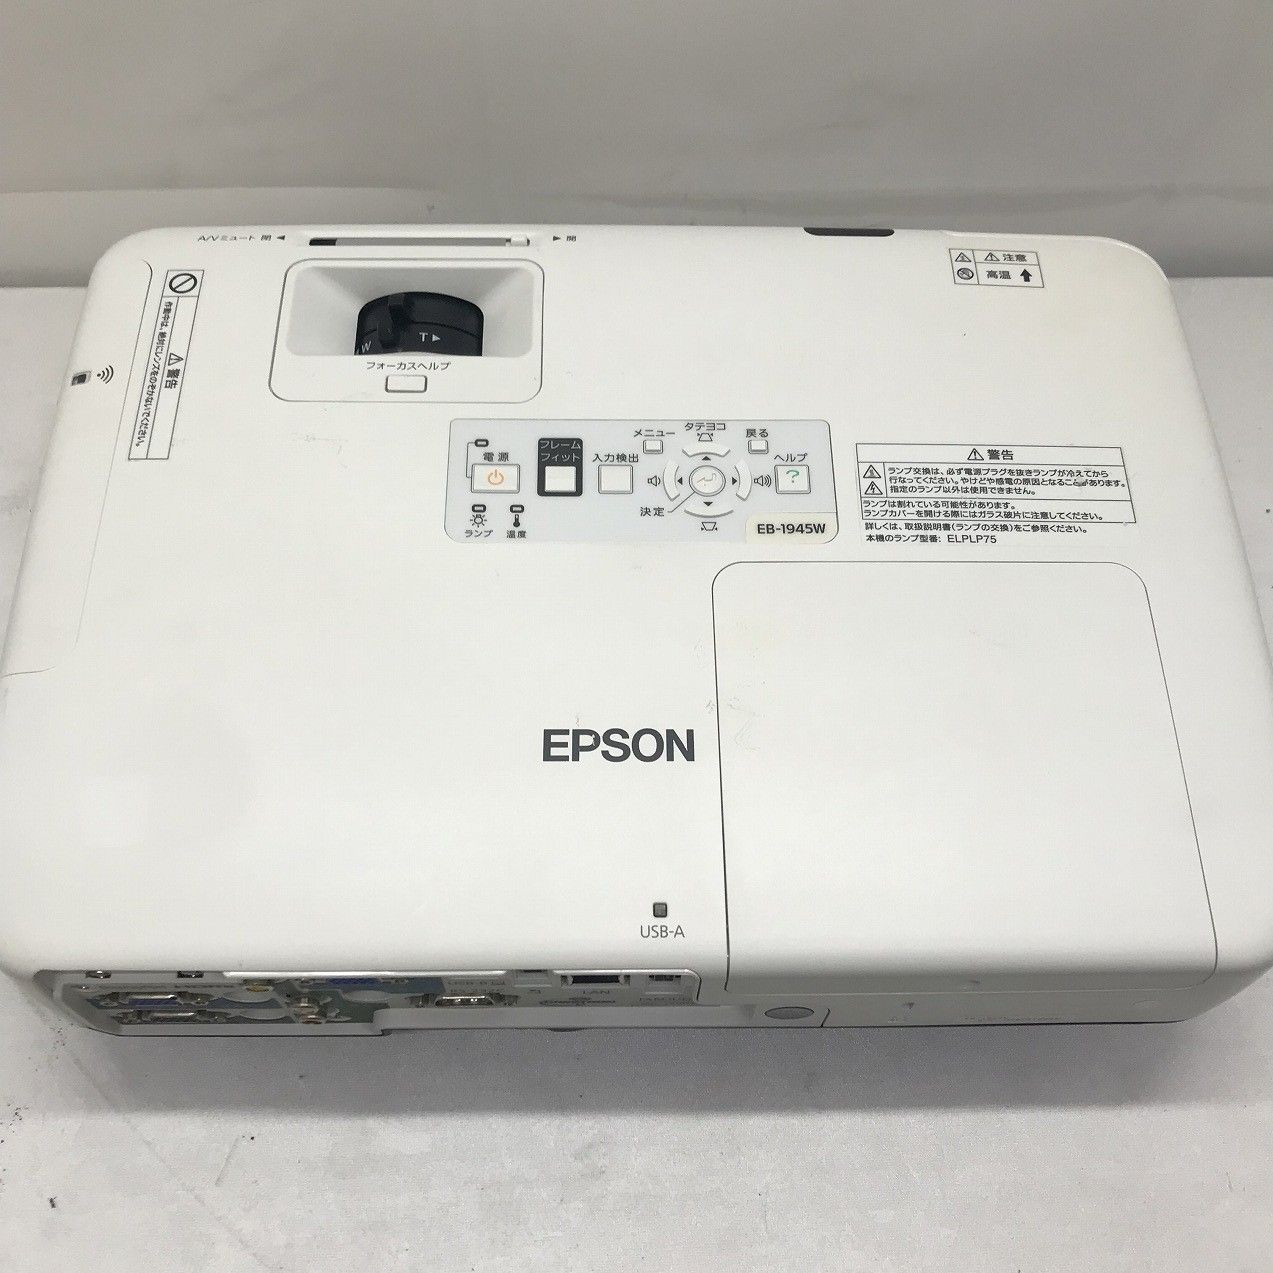 EPSON プロジェクター EB-1945W 4200lm WXGA - PC堂 - メルカリ